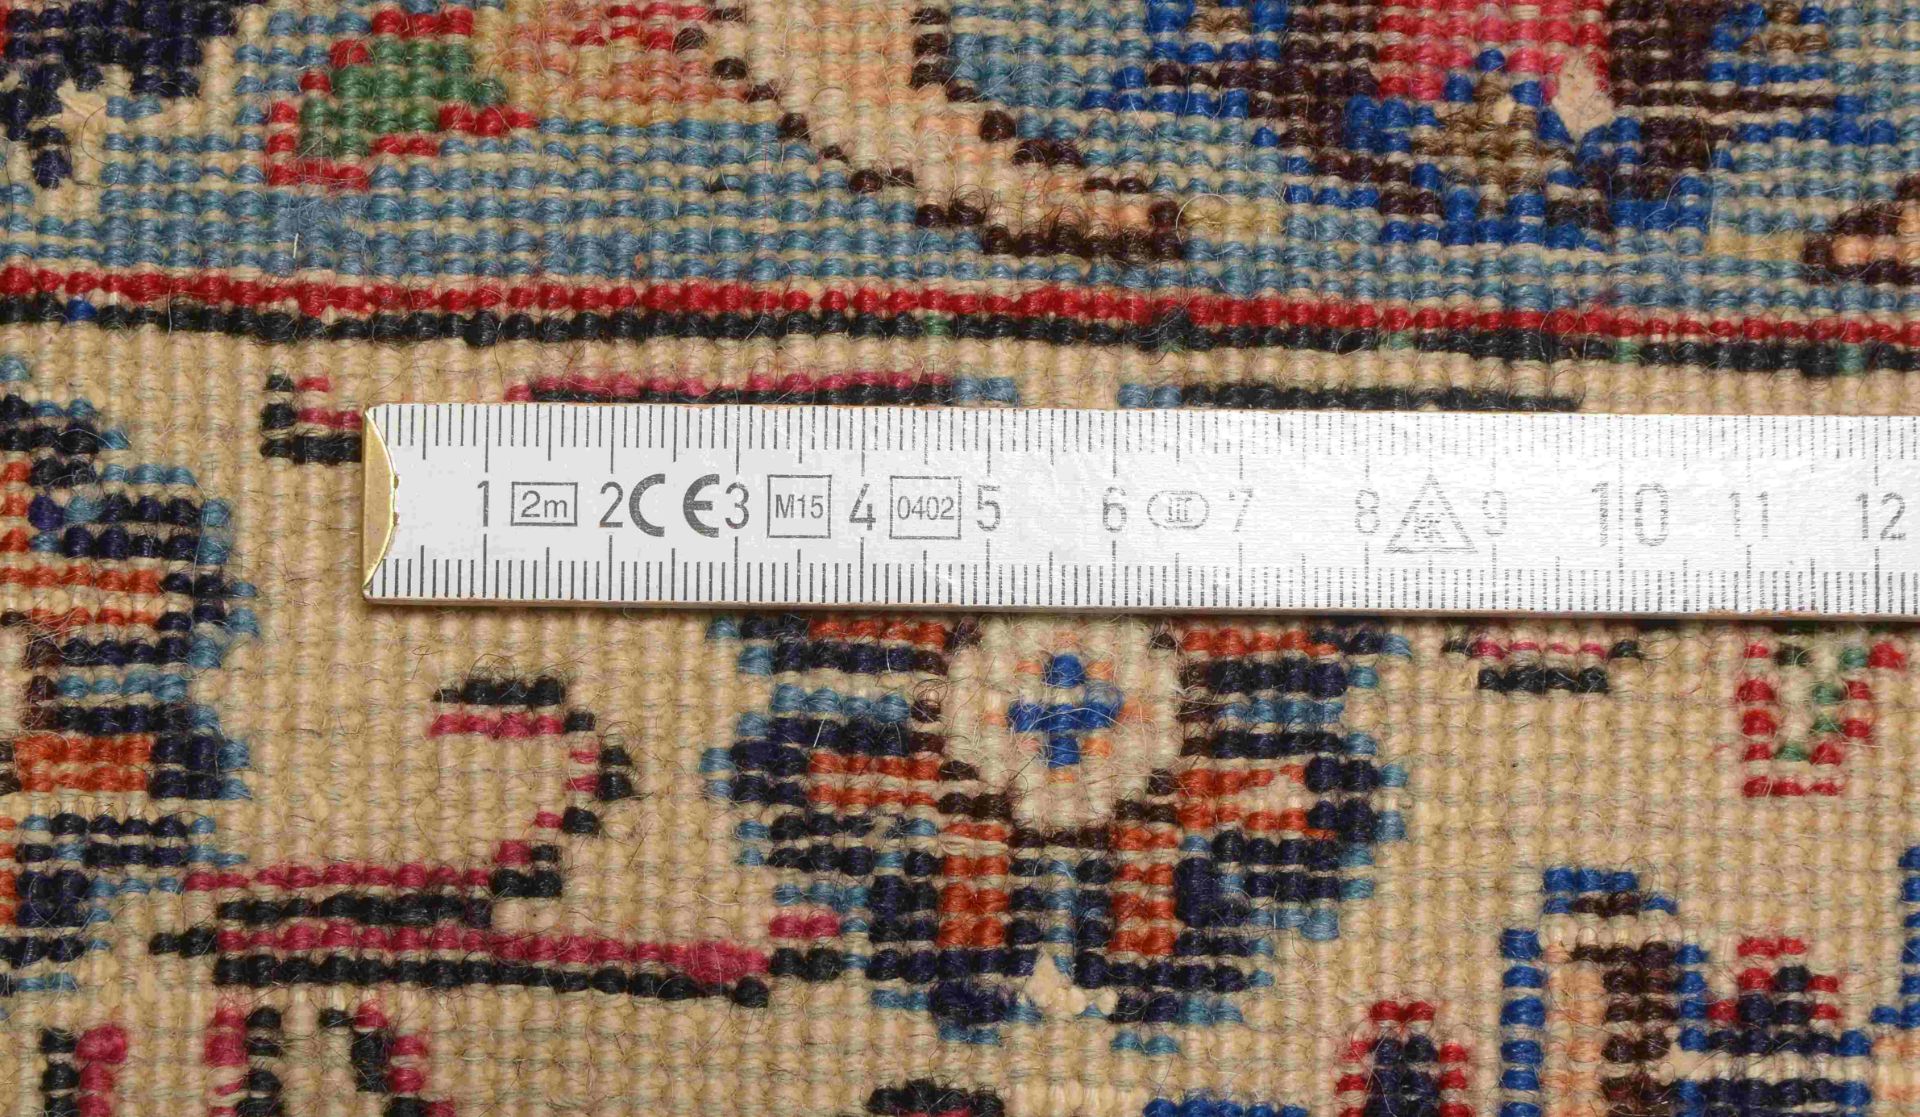 Mesched, älter, feste Knüpfung, hellgrundig, mit bekannter Mesched-Signatur; Maße 362 x 258 cm (stel - Bild 2 aus 3